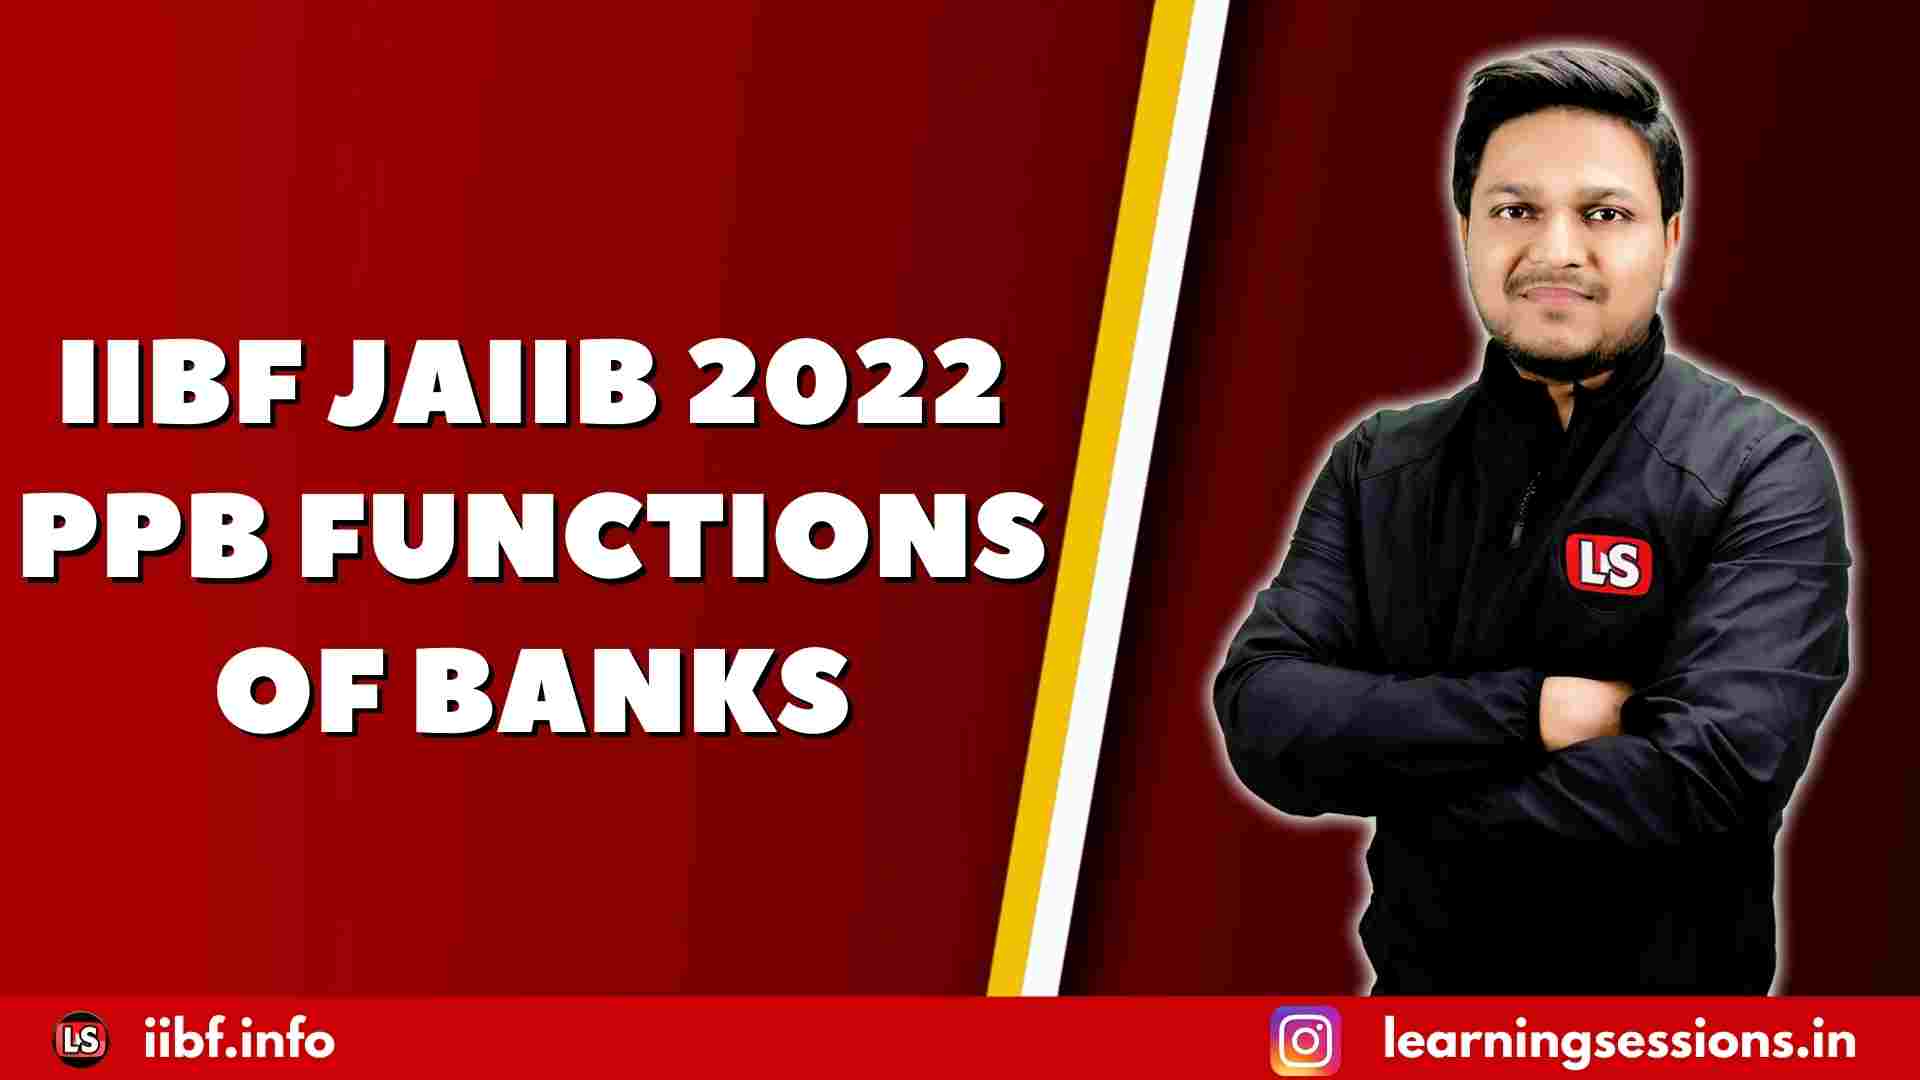 IIBF JAIIB 2022 PPB FUNCTIONS OF BANKS